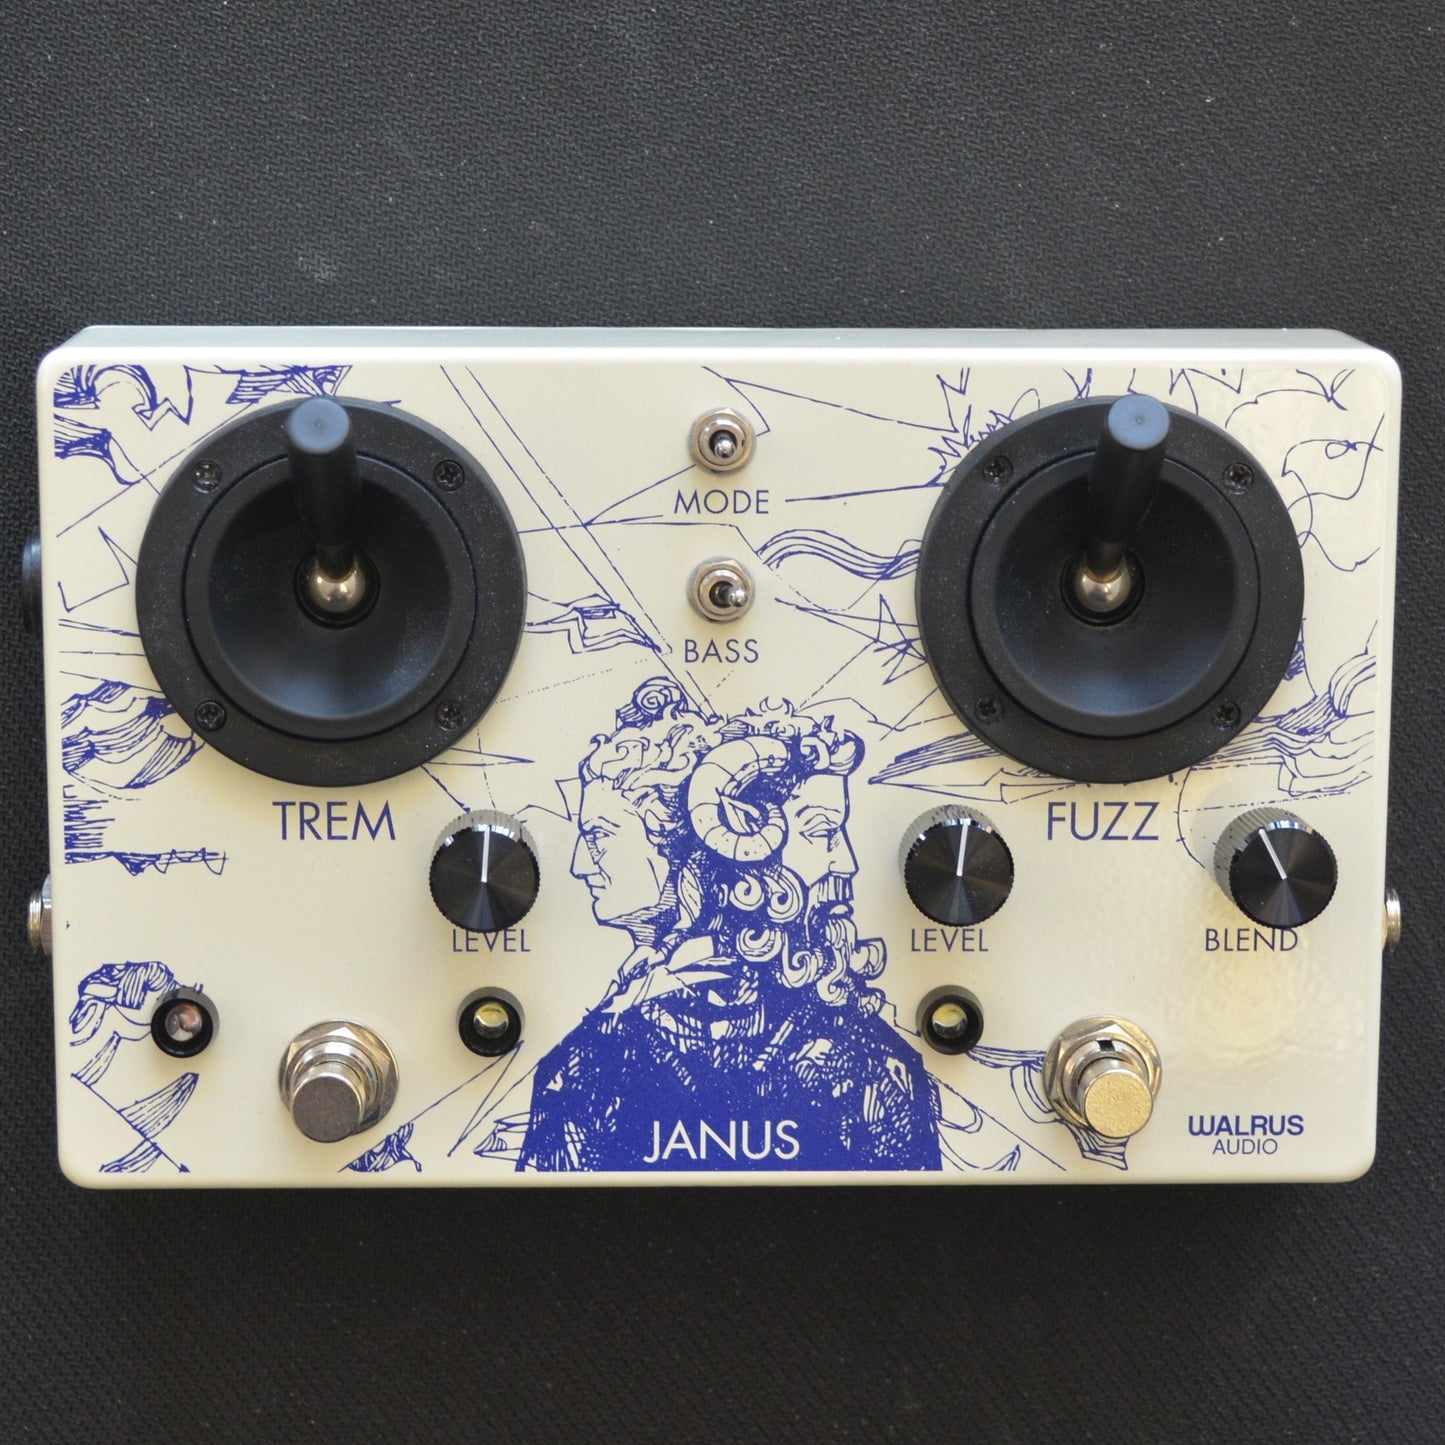 Walrus Audio Janus Fuzz/Tremolo with Joystick Control 2021